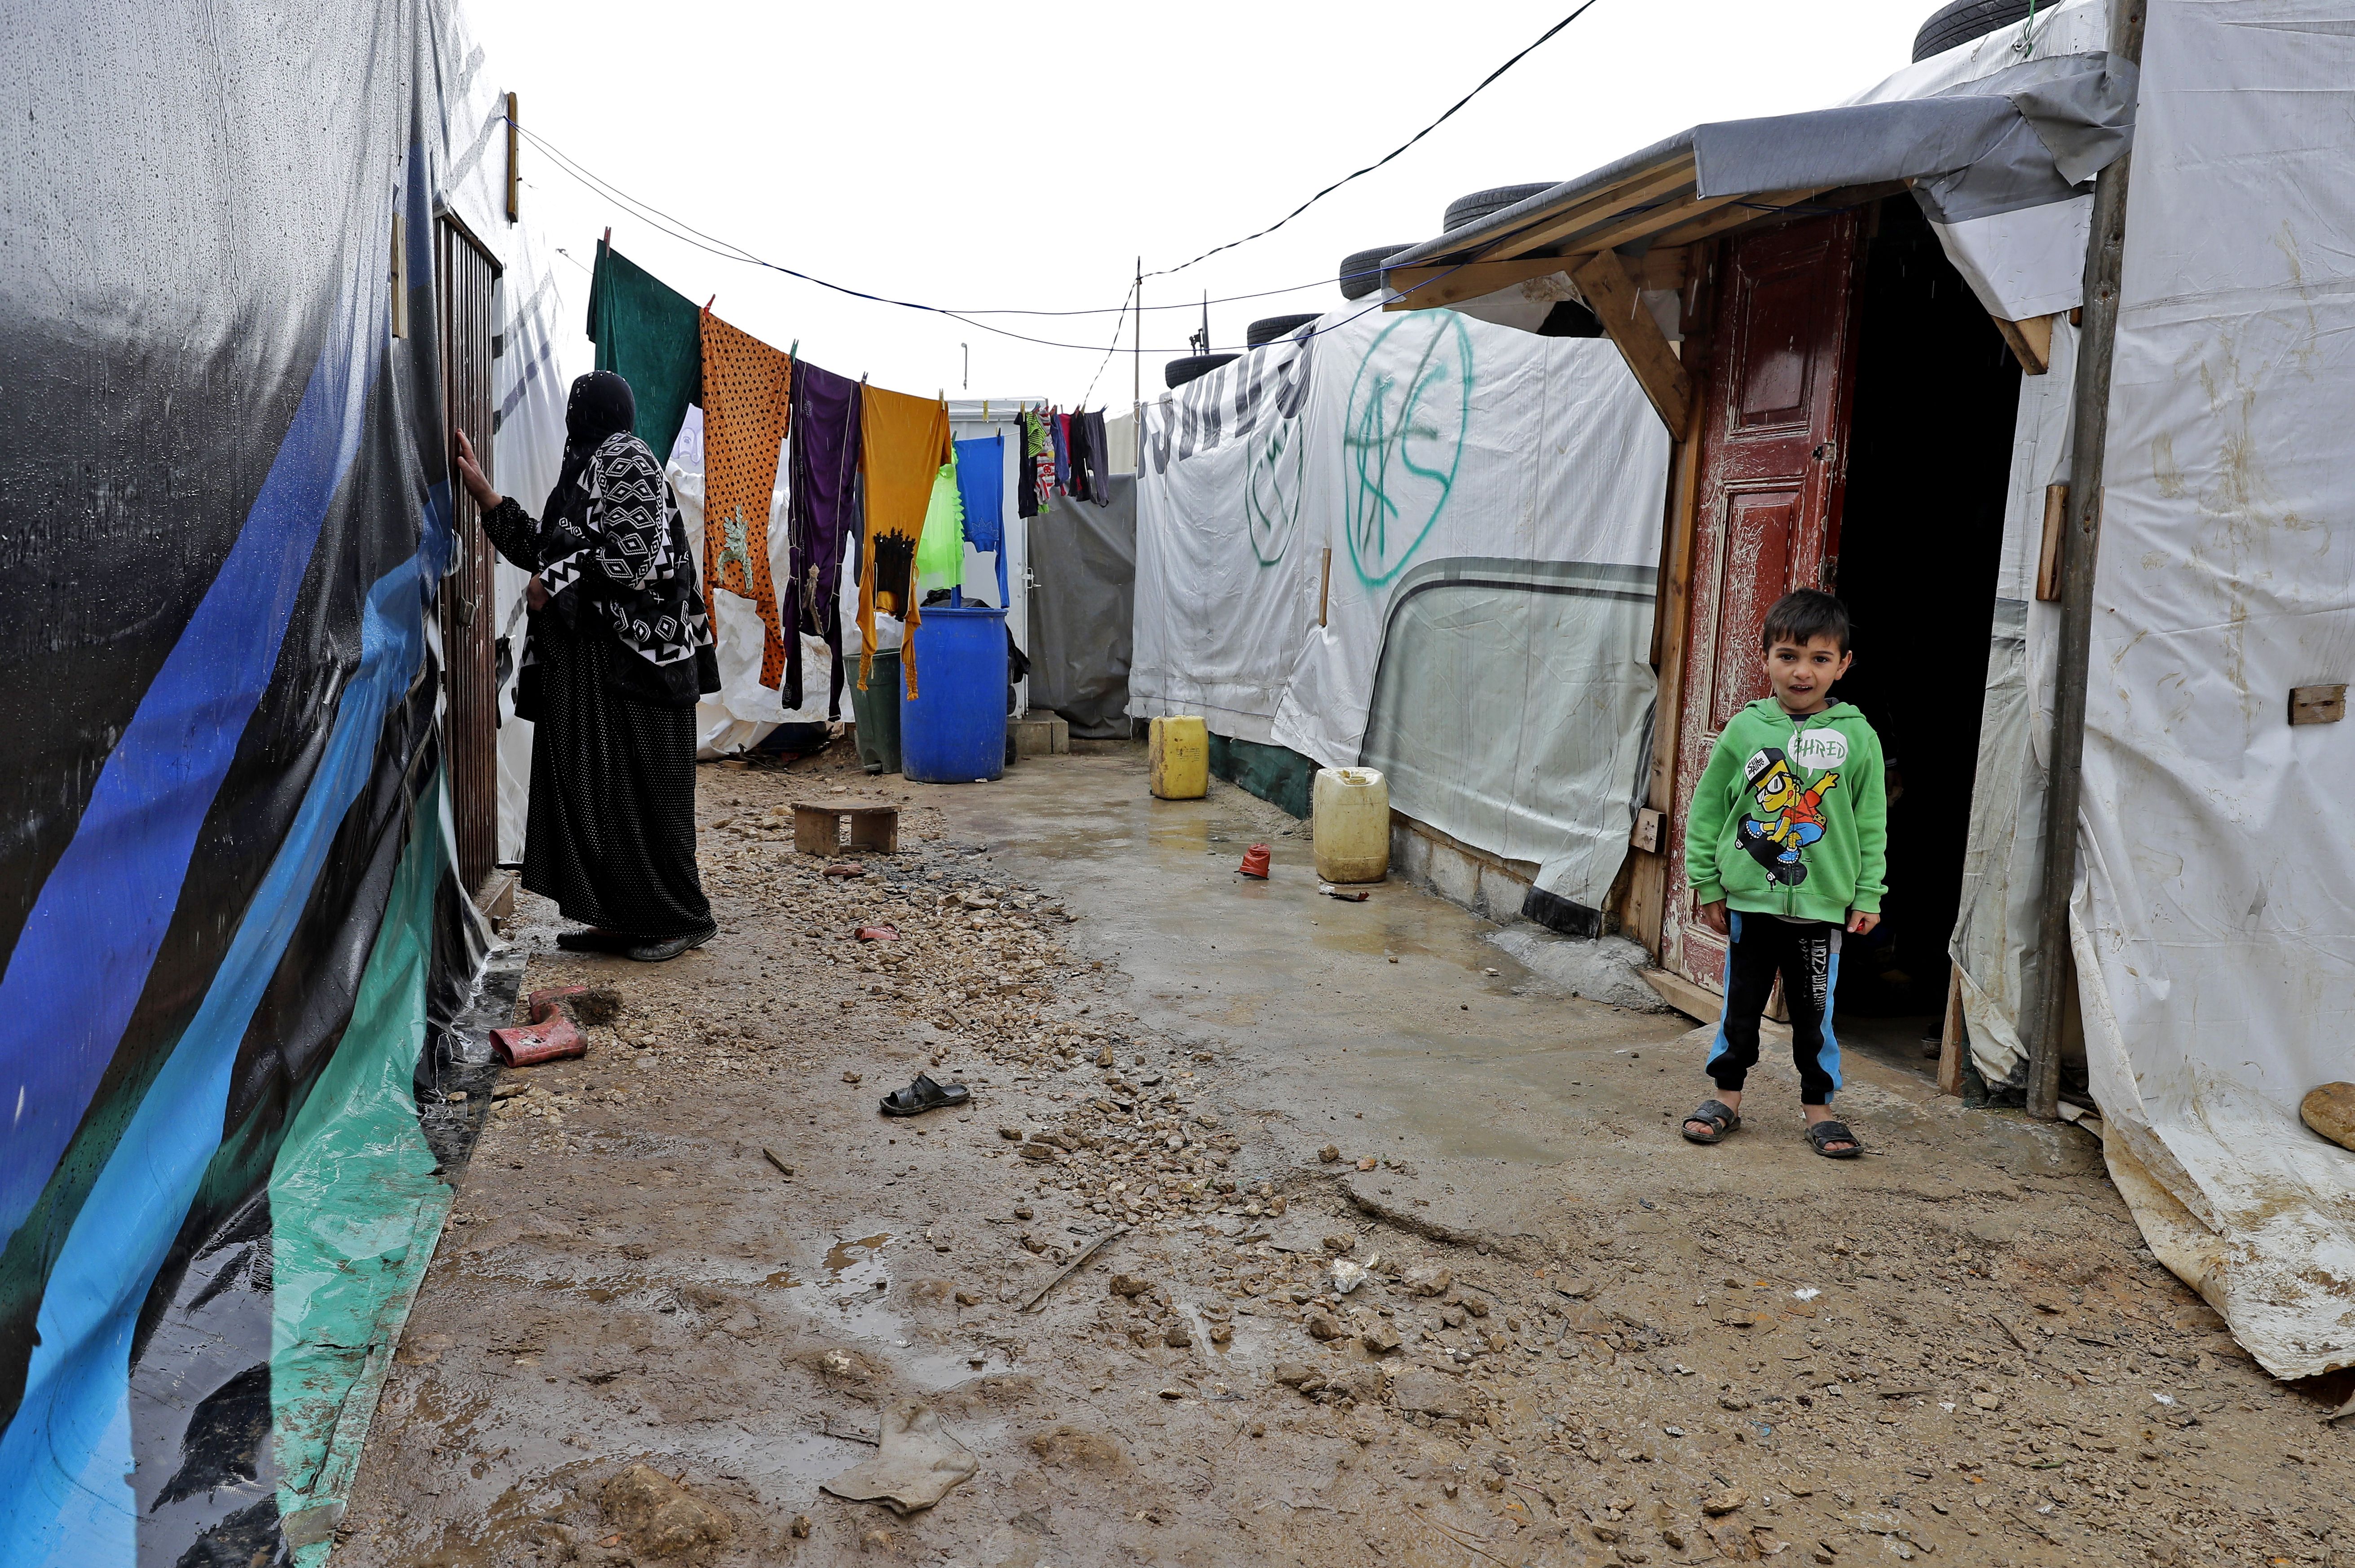 Merkel dankt Libanon für Flüchtlingsaufnahme – Hariri: Flüchtlinge sind „große Bürde” für Wirtschaft und soziales Gefüge